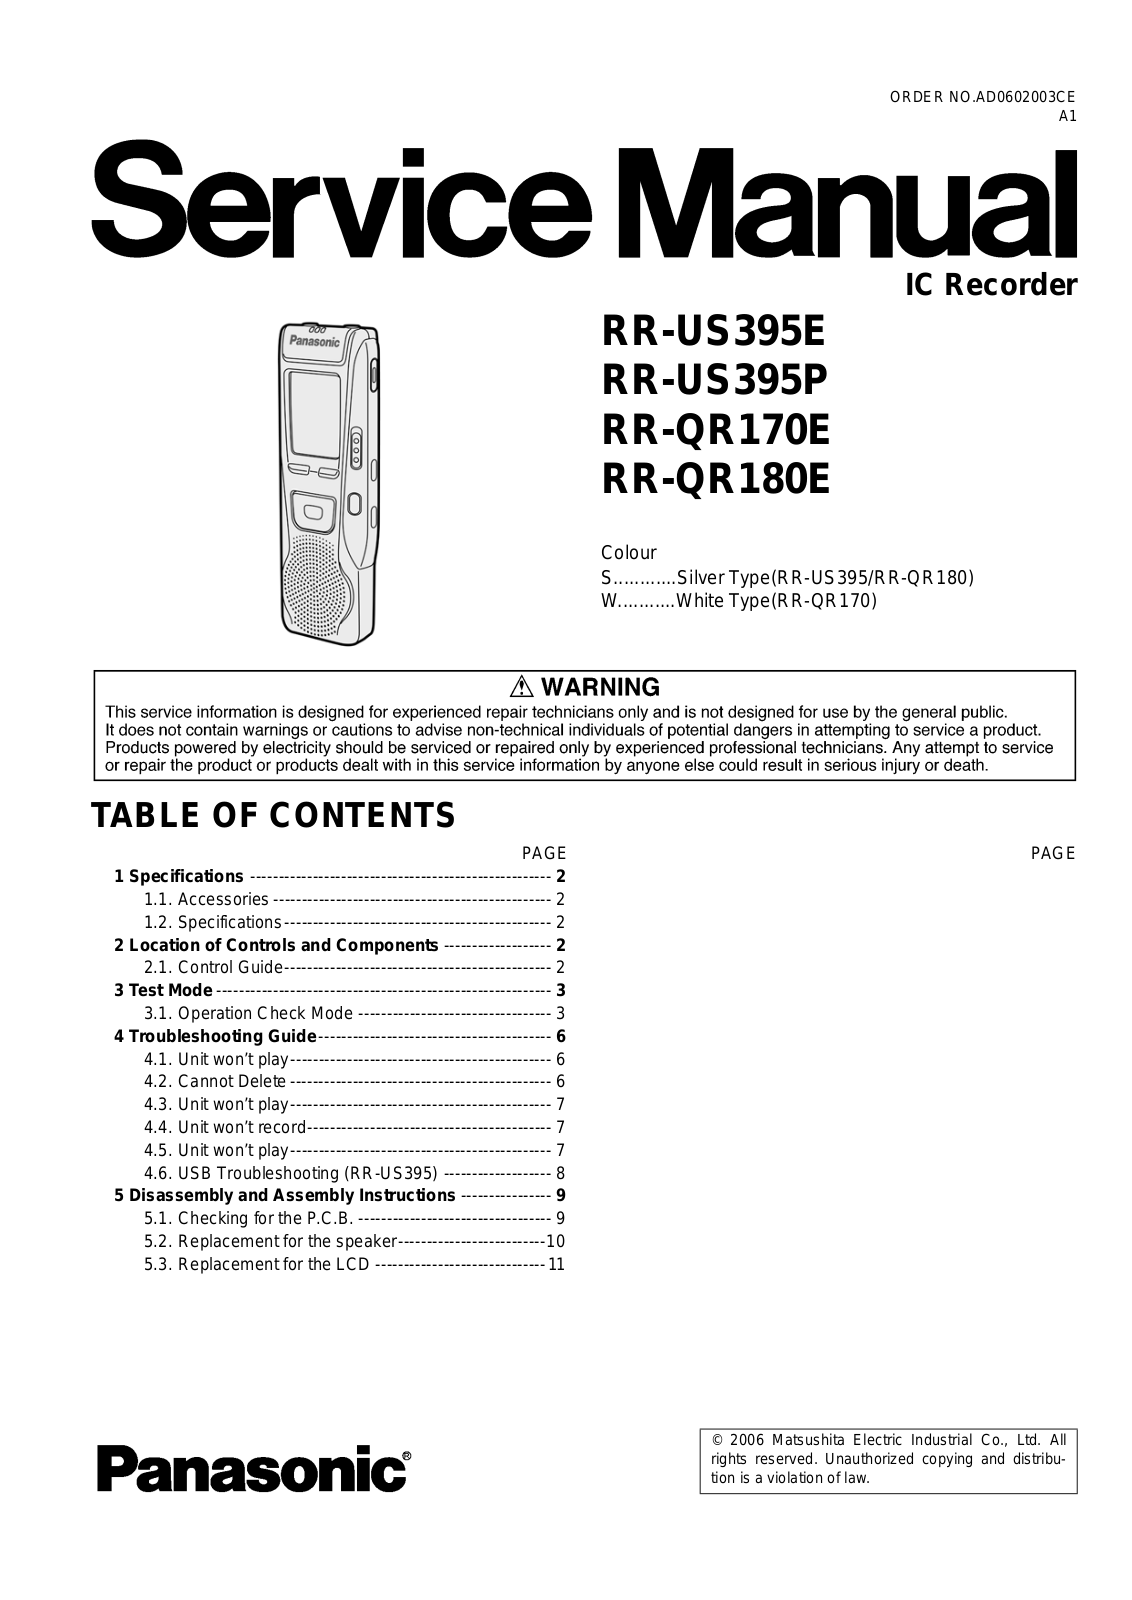 Panasonic RRQR-170-E, RRQR-180-E, RRUS-395-E, RRUS-395-P Service manual